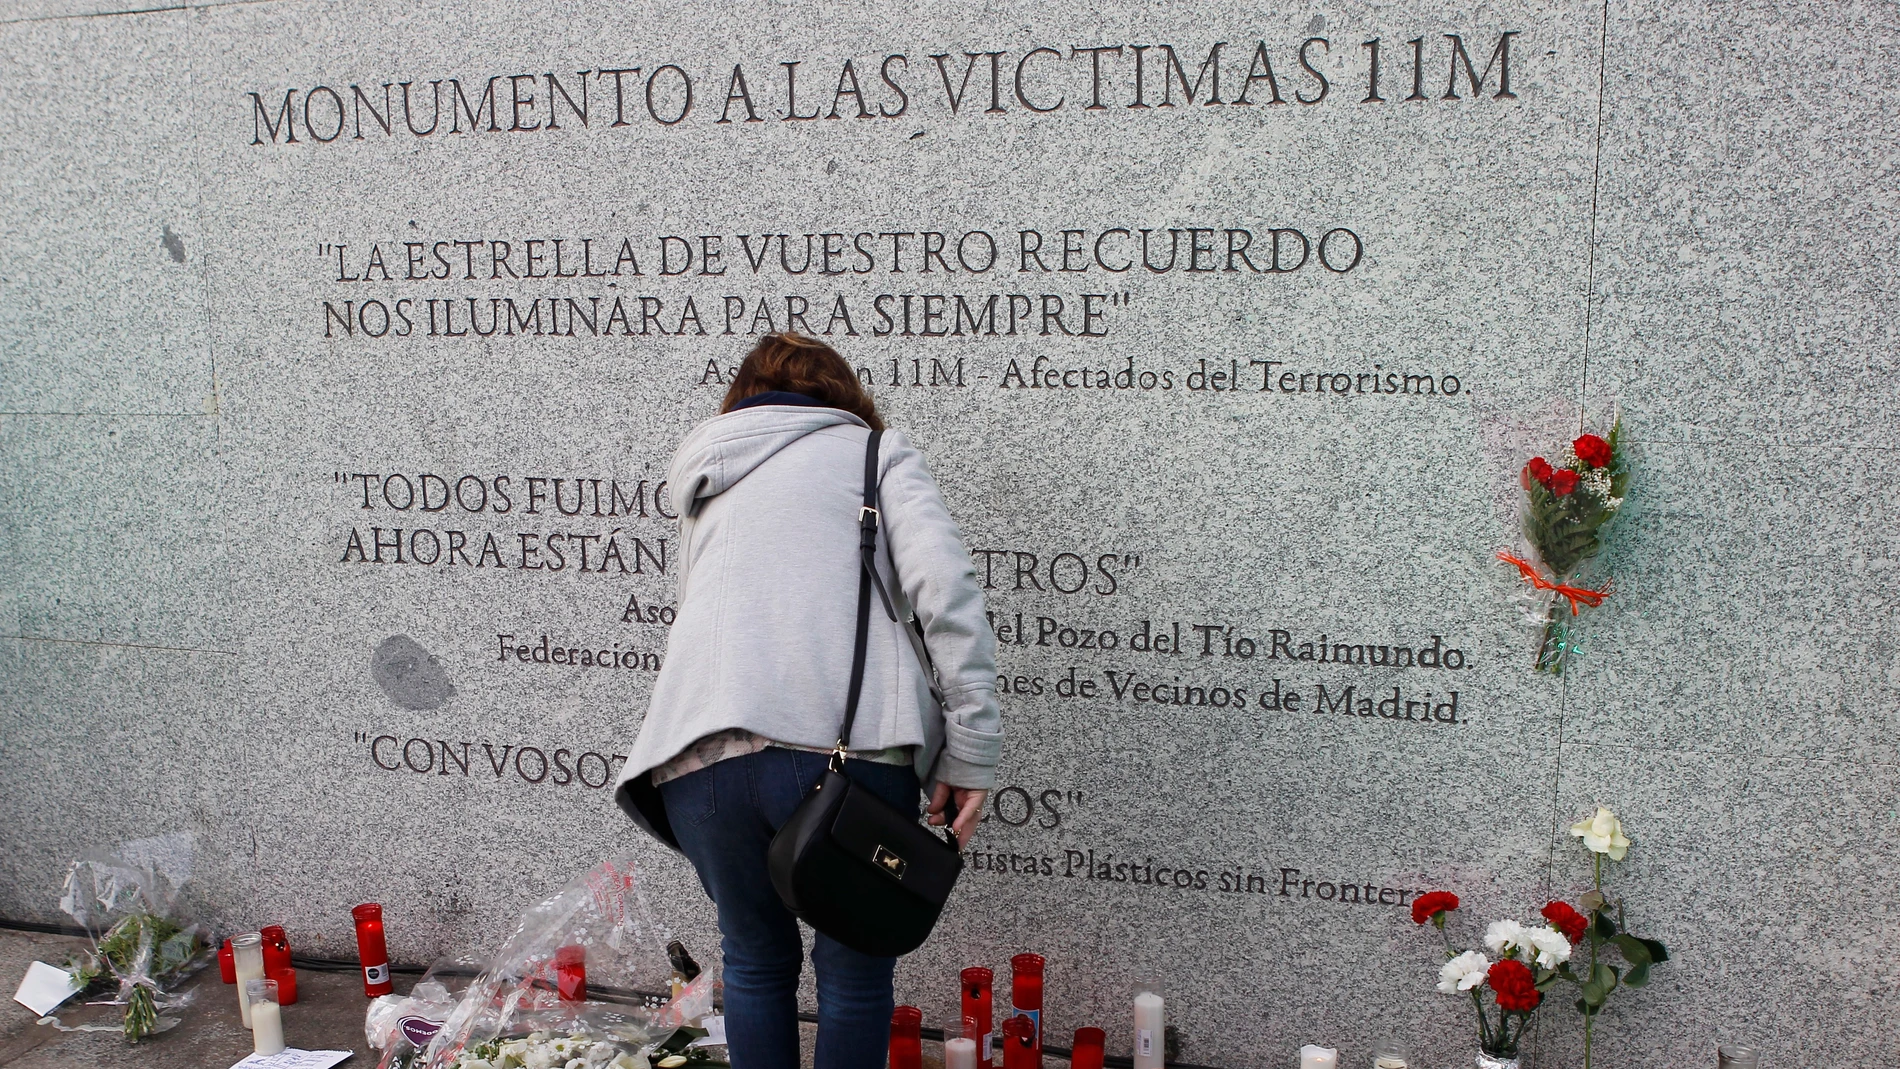 Flores y velas junto al monumento a las víctimas de los atentados del 11M, con motivo del decimocuarto aniversario de la masacre